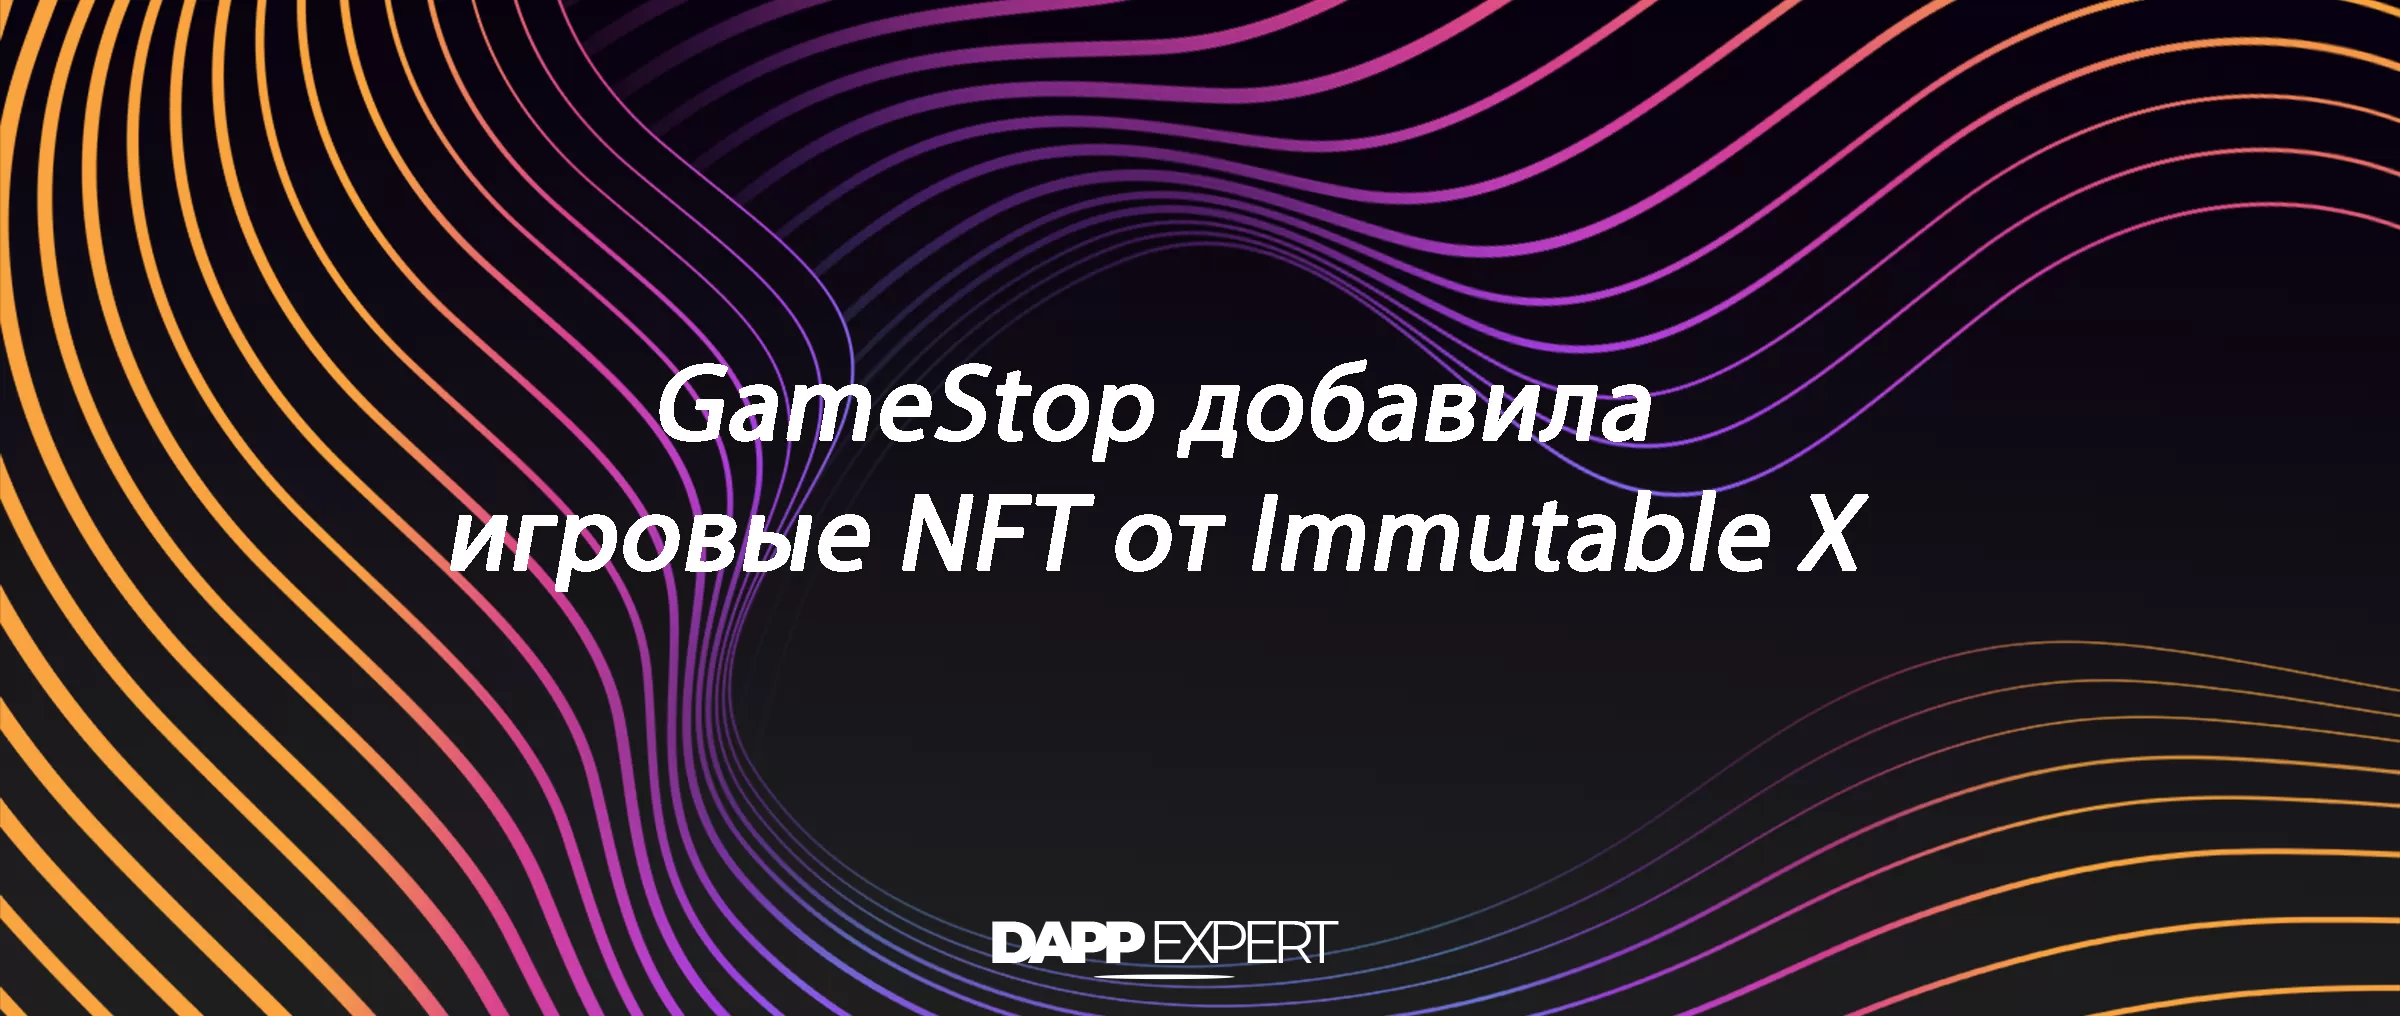 GameStop добавила игровые NFT от Immutable X